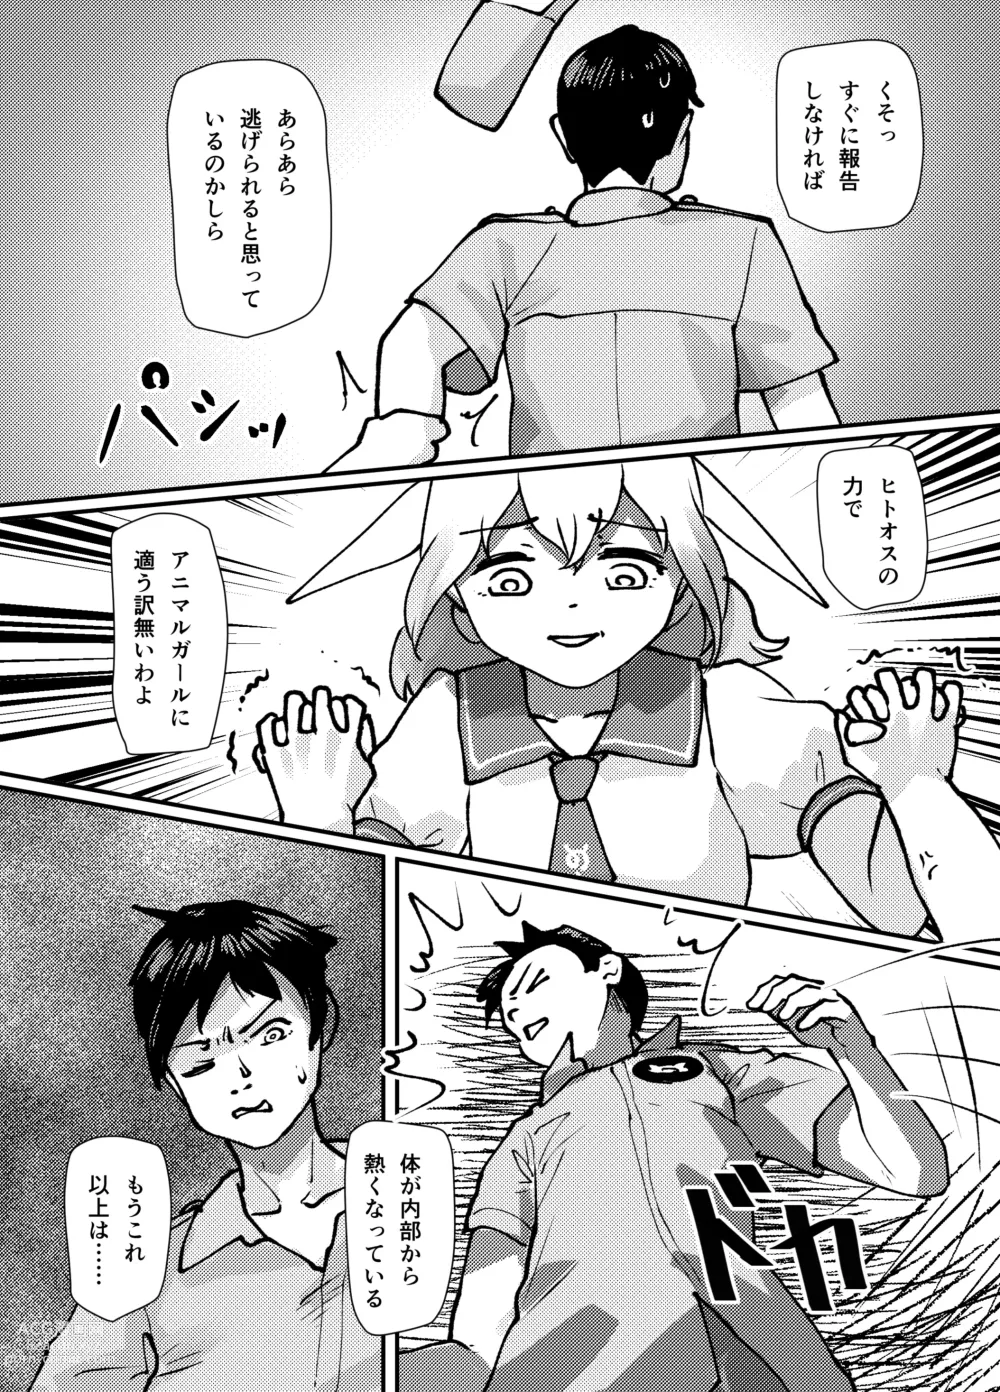 Page 4 of doujinshi Koitsu ga Hannin desu